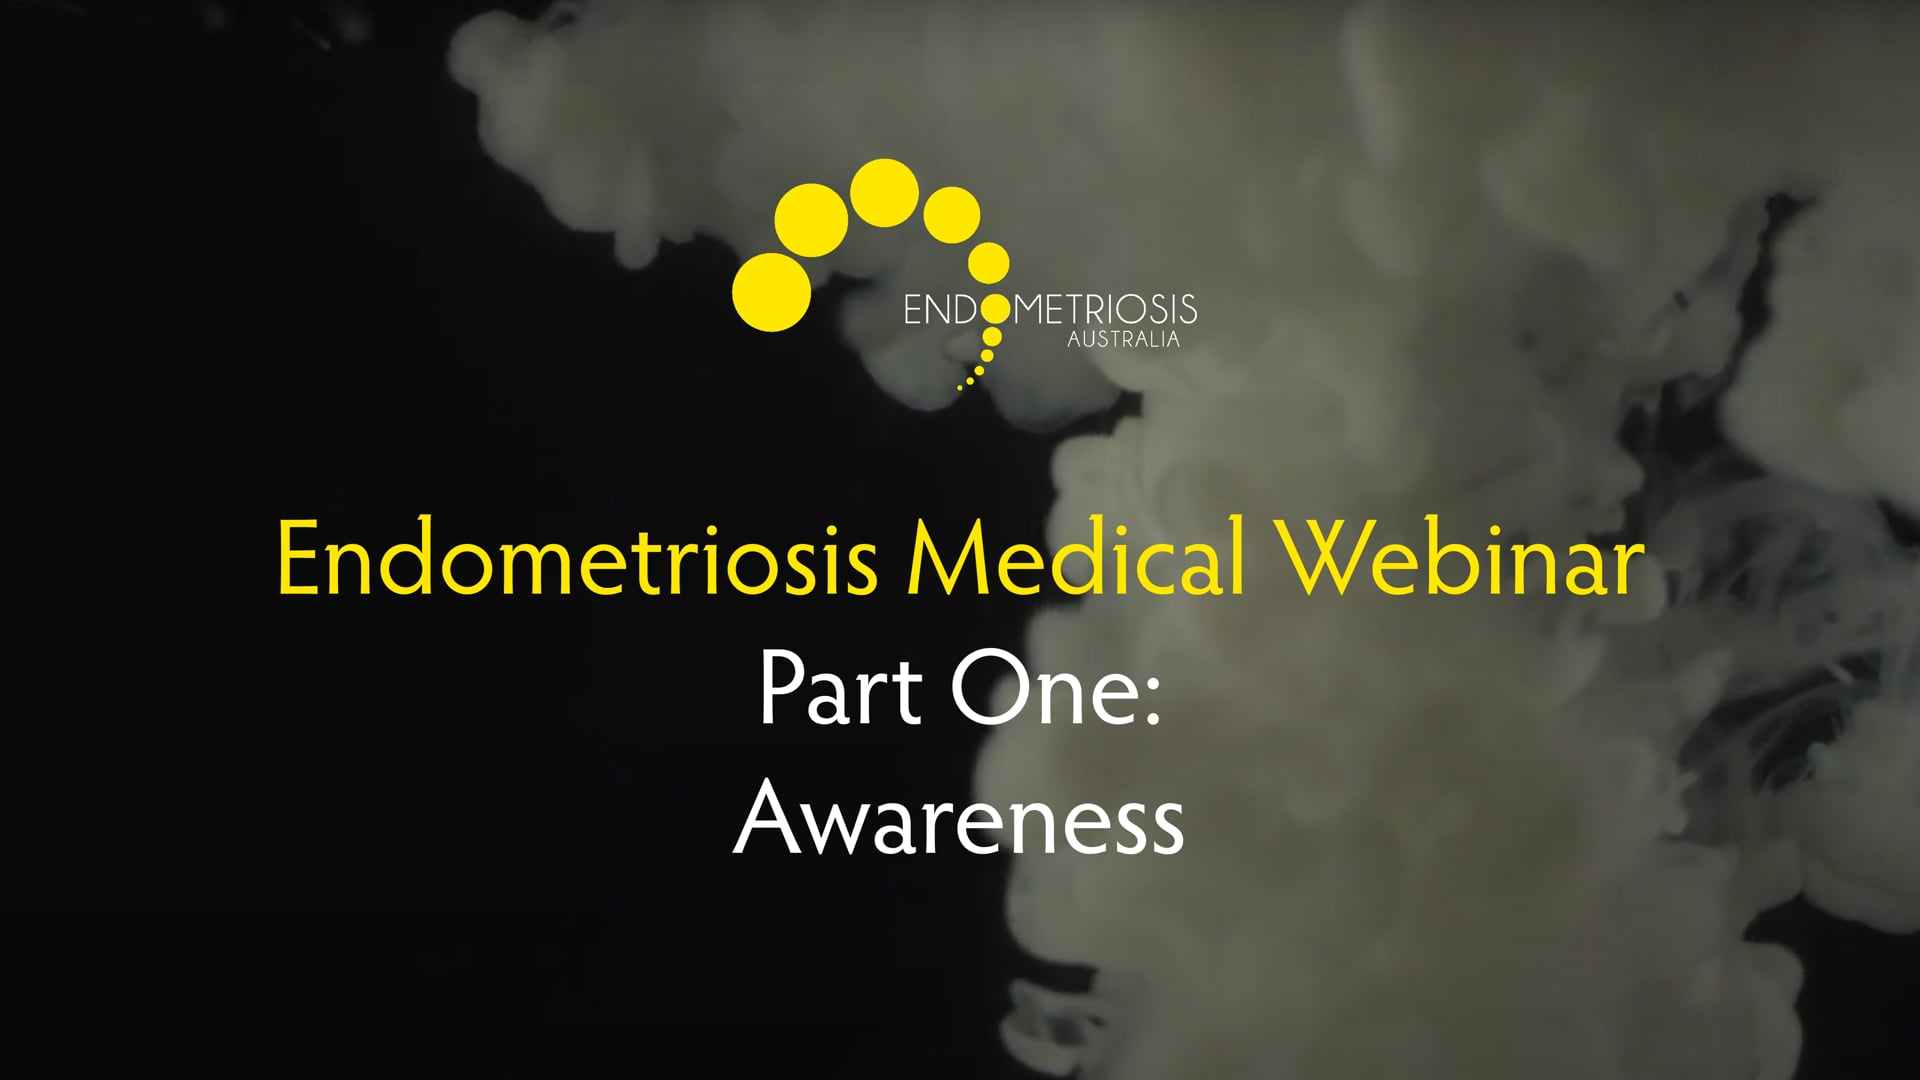 1: Awareness- Endometriosis Australia